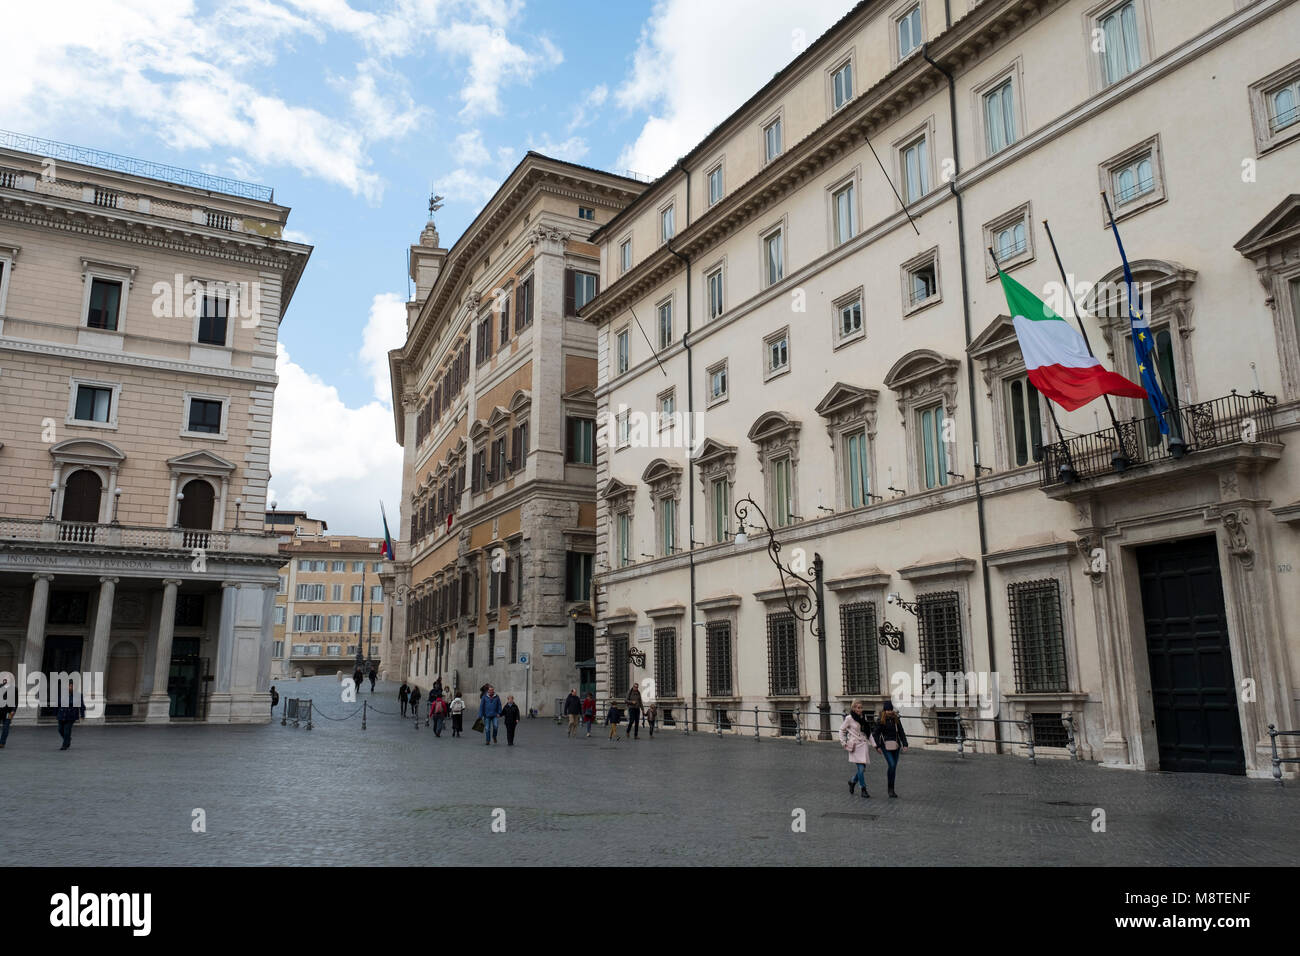 Palazzo Chigi, Piazza Colonna, centro storico district, Rome, Italy, Europe  Stock Photo - Alamy